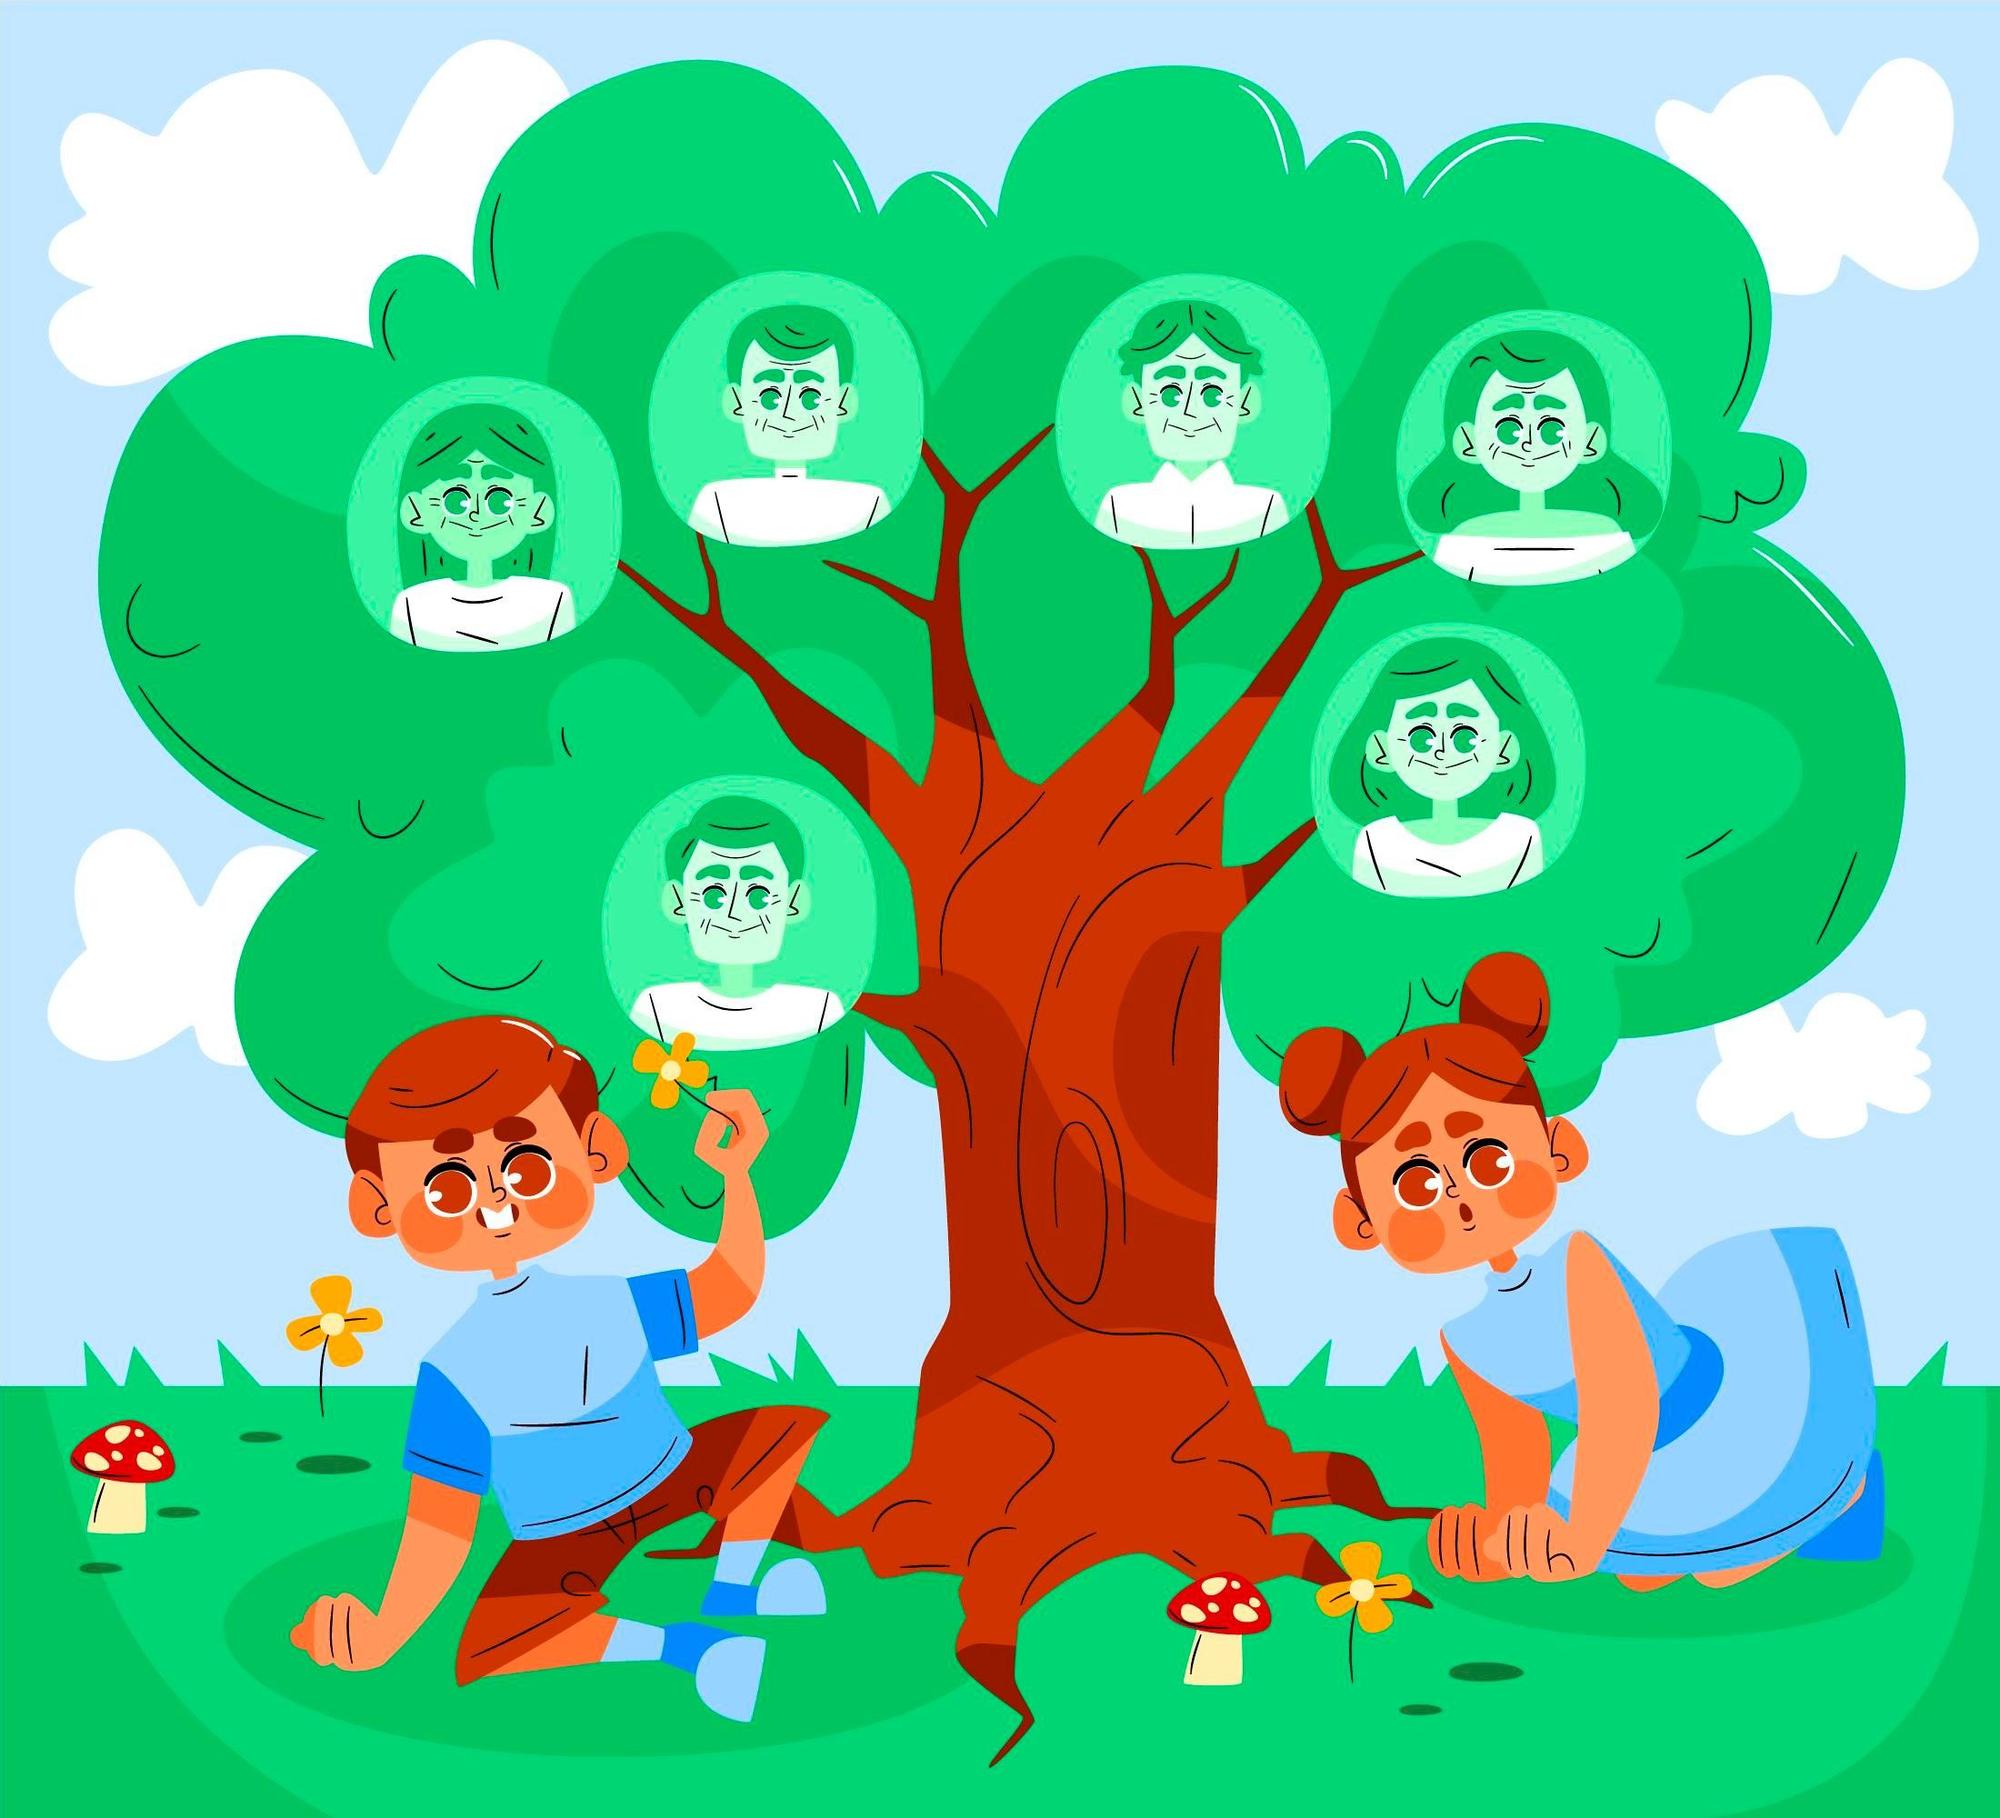 Cómo hacer el árbol genealógico de la familia 